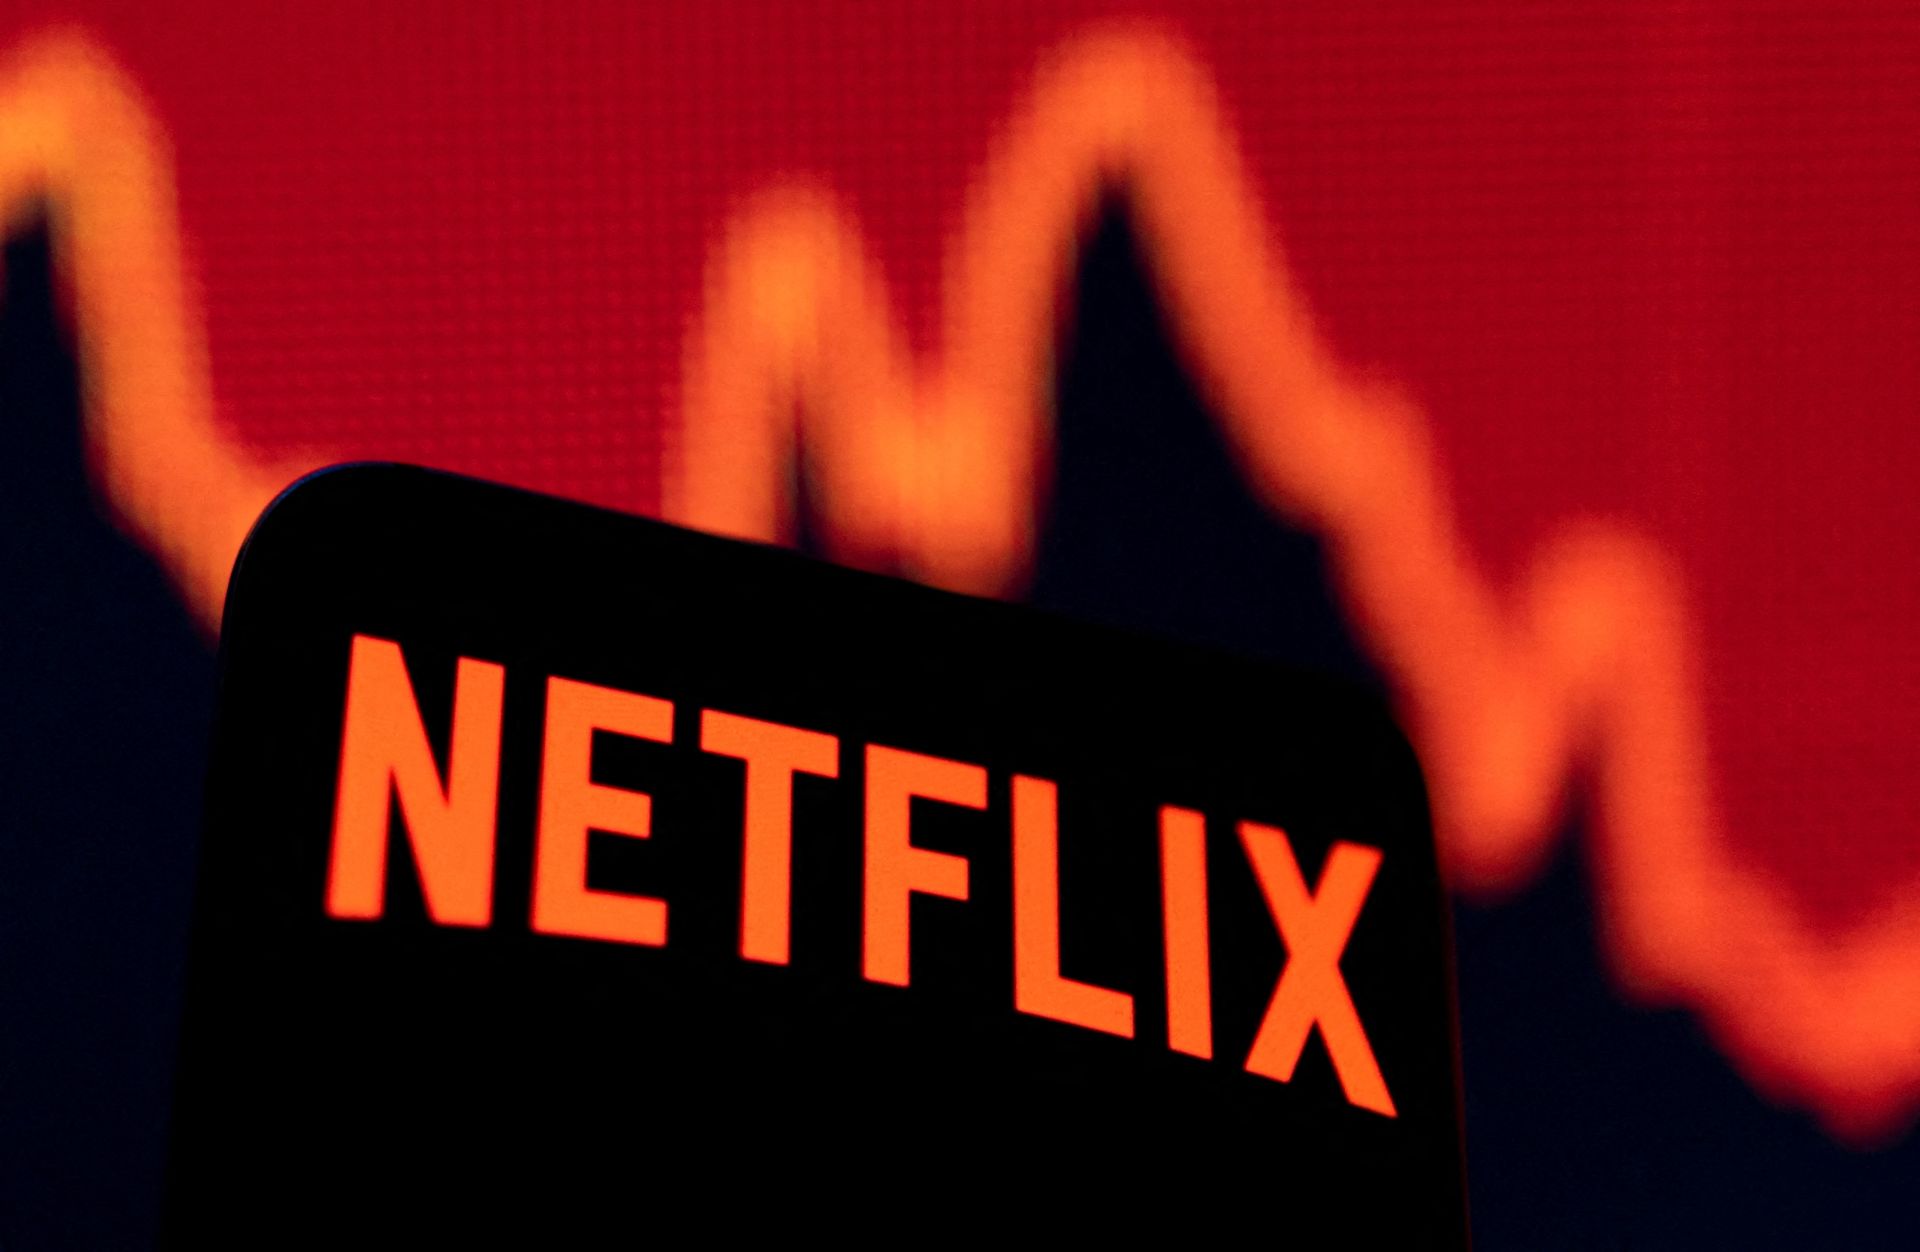 Netflix thông báo đã mất 200.000 người đăng ký và hiện hãng vẫn đang cố gắng kiểm soát chi phí. Một phần nỗ lực của gã khổng lồ này là sa thải nhân viên, cắt giảm nhân sự.